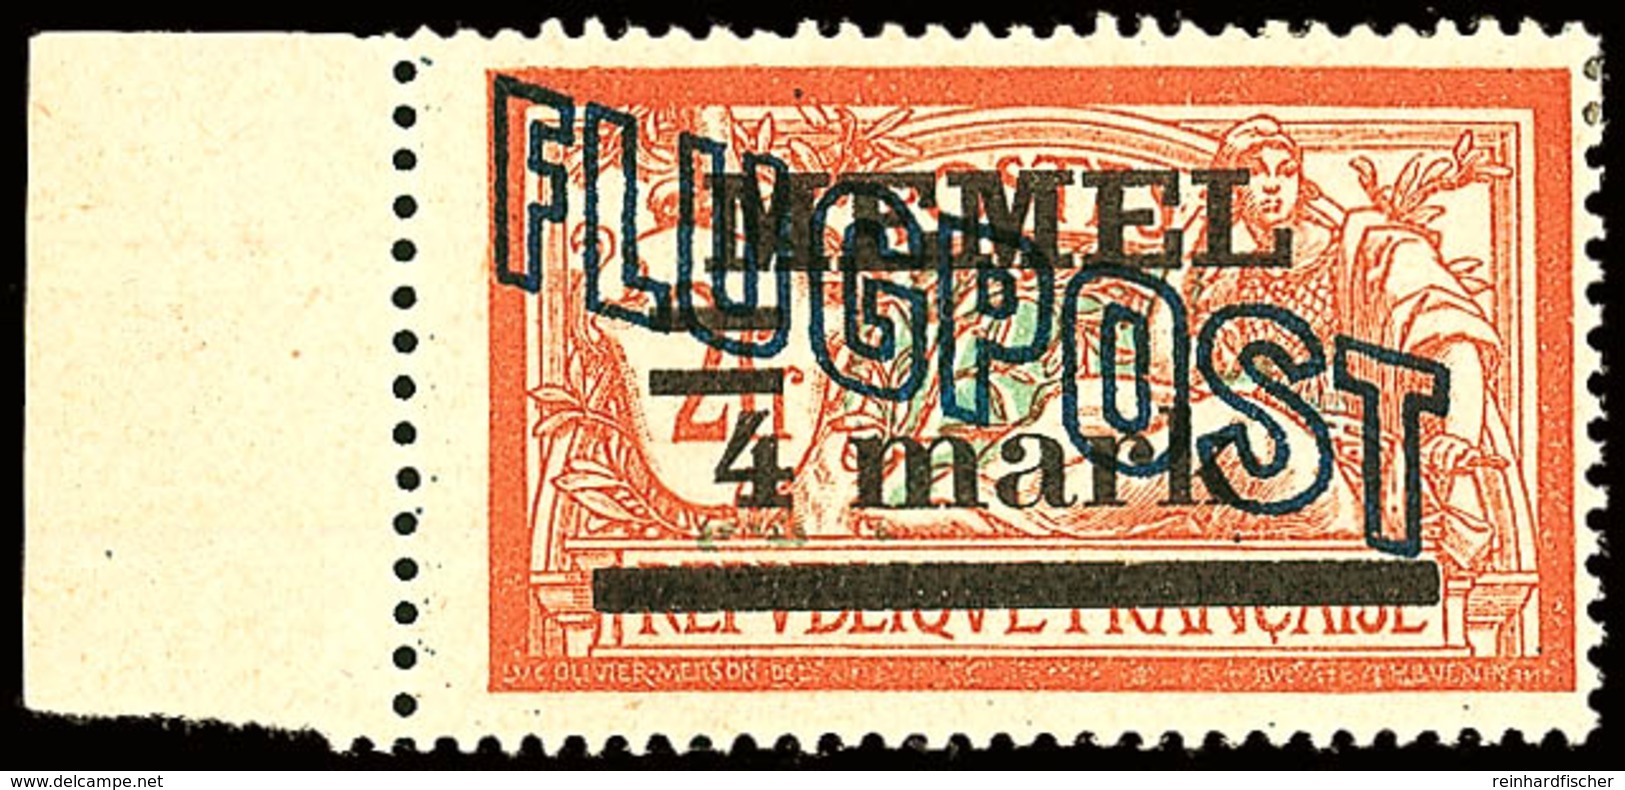 4 Mark Auf 2 Fr. Flugpostausgabe Mit Aufdruckfehler "Wertziffer 4 Verdickt", Ungebrauchtes Kabinettstück, Gepr. Klein BP - Memelland 1923